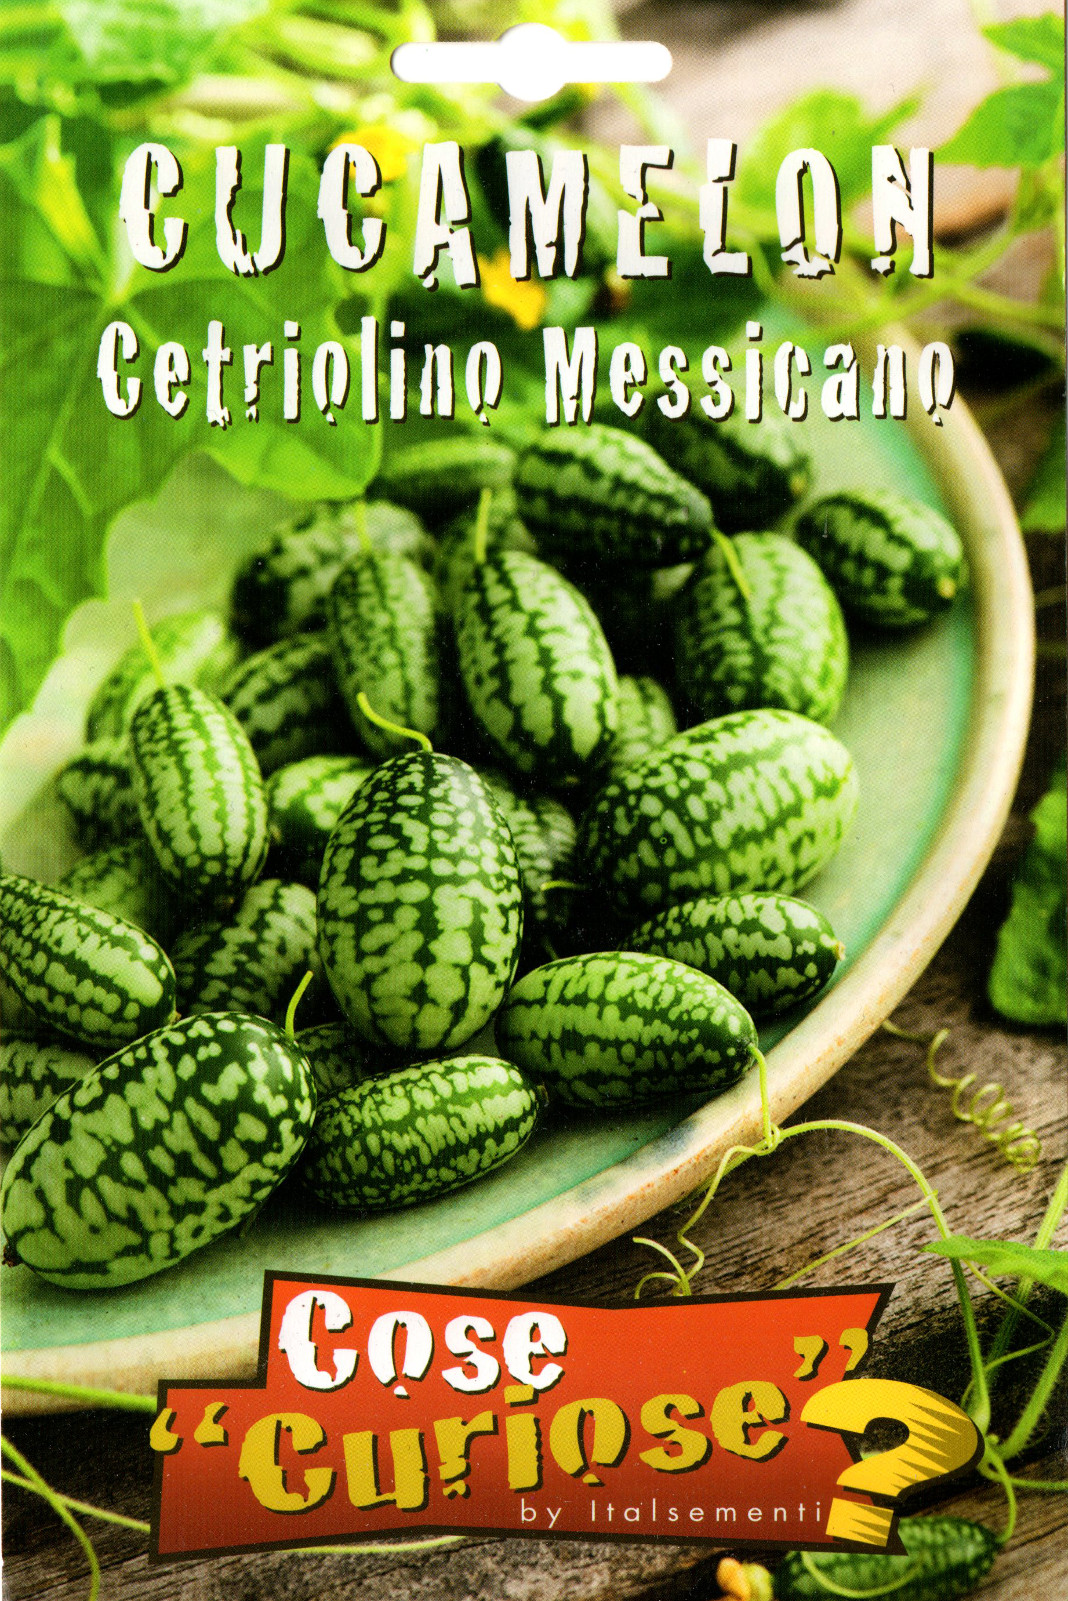 Cetriolino Messicano